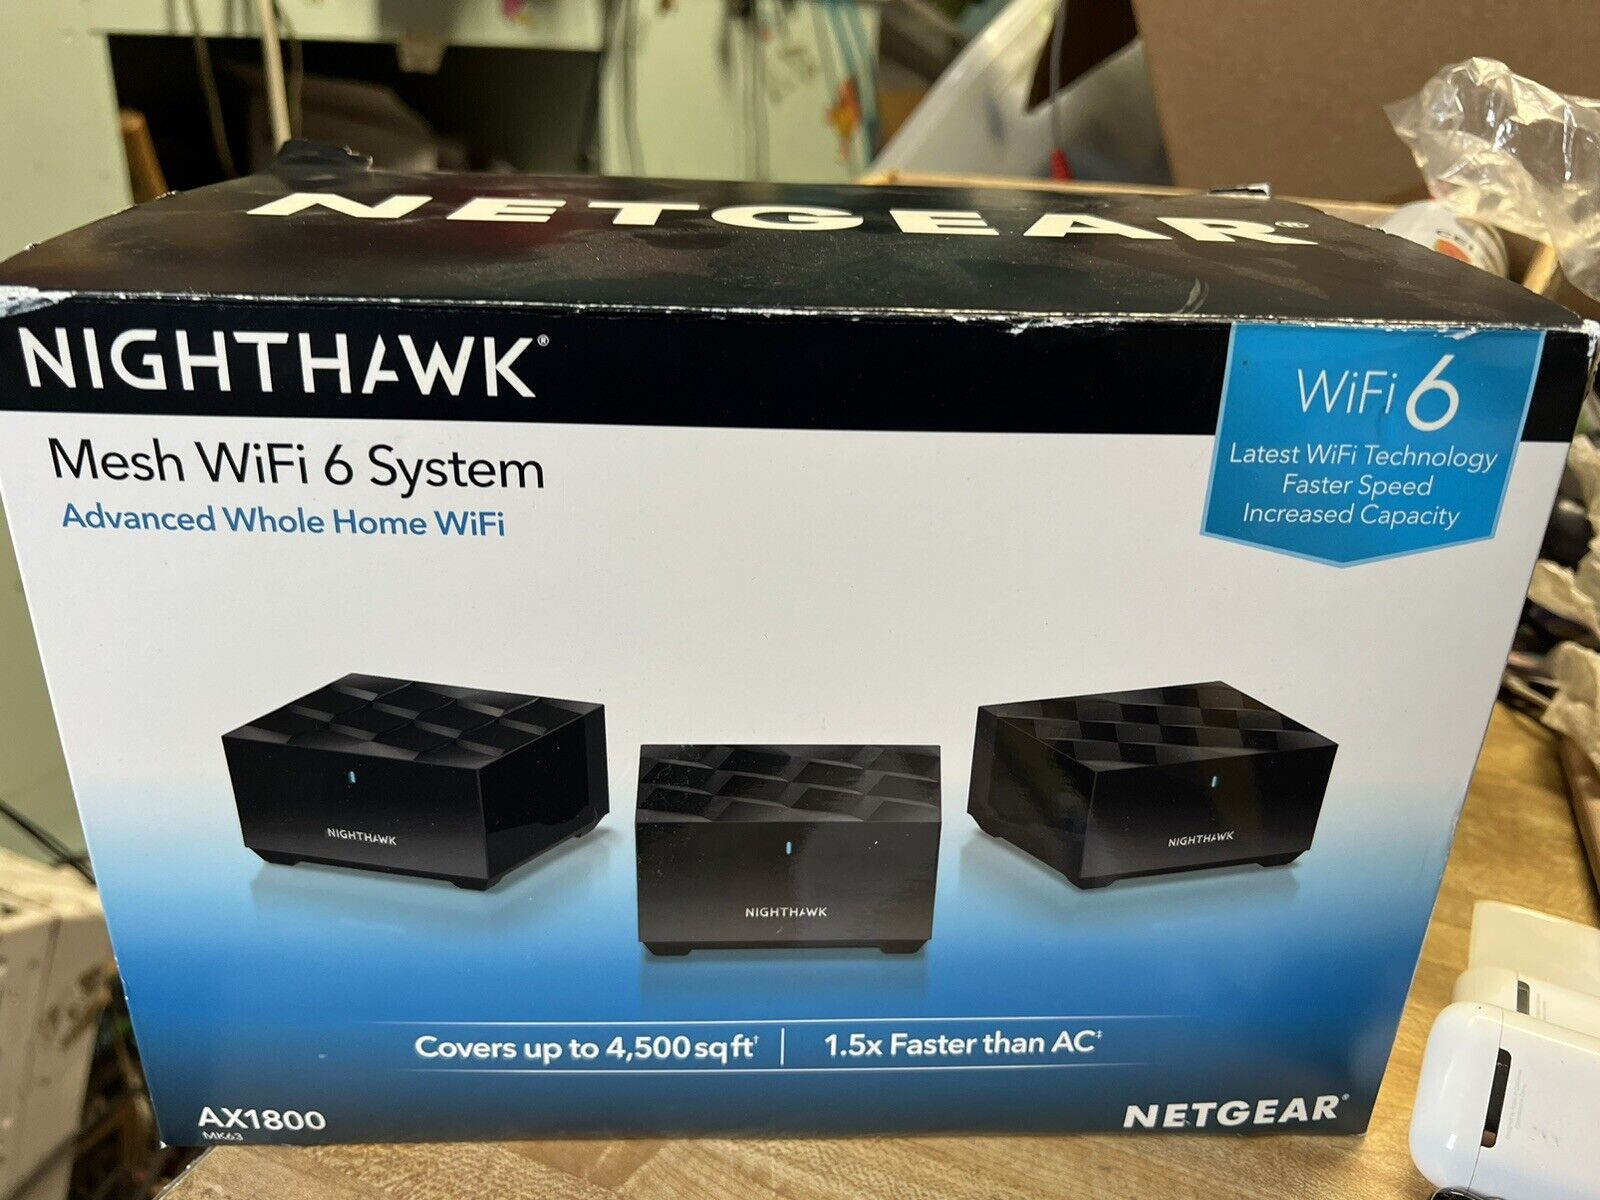 Netgear Nighthawk AX1800 Mesh WiFi 6 System Advanced Whole Home, Model MK63